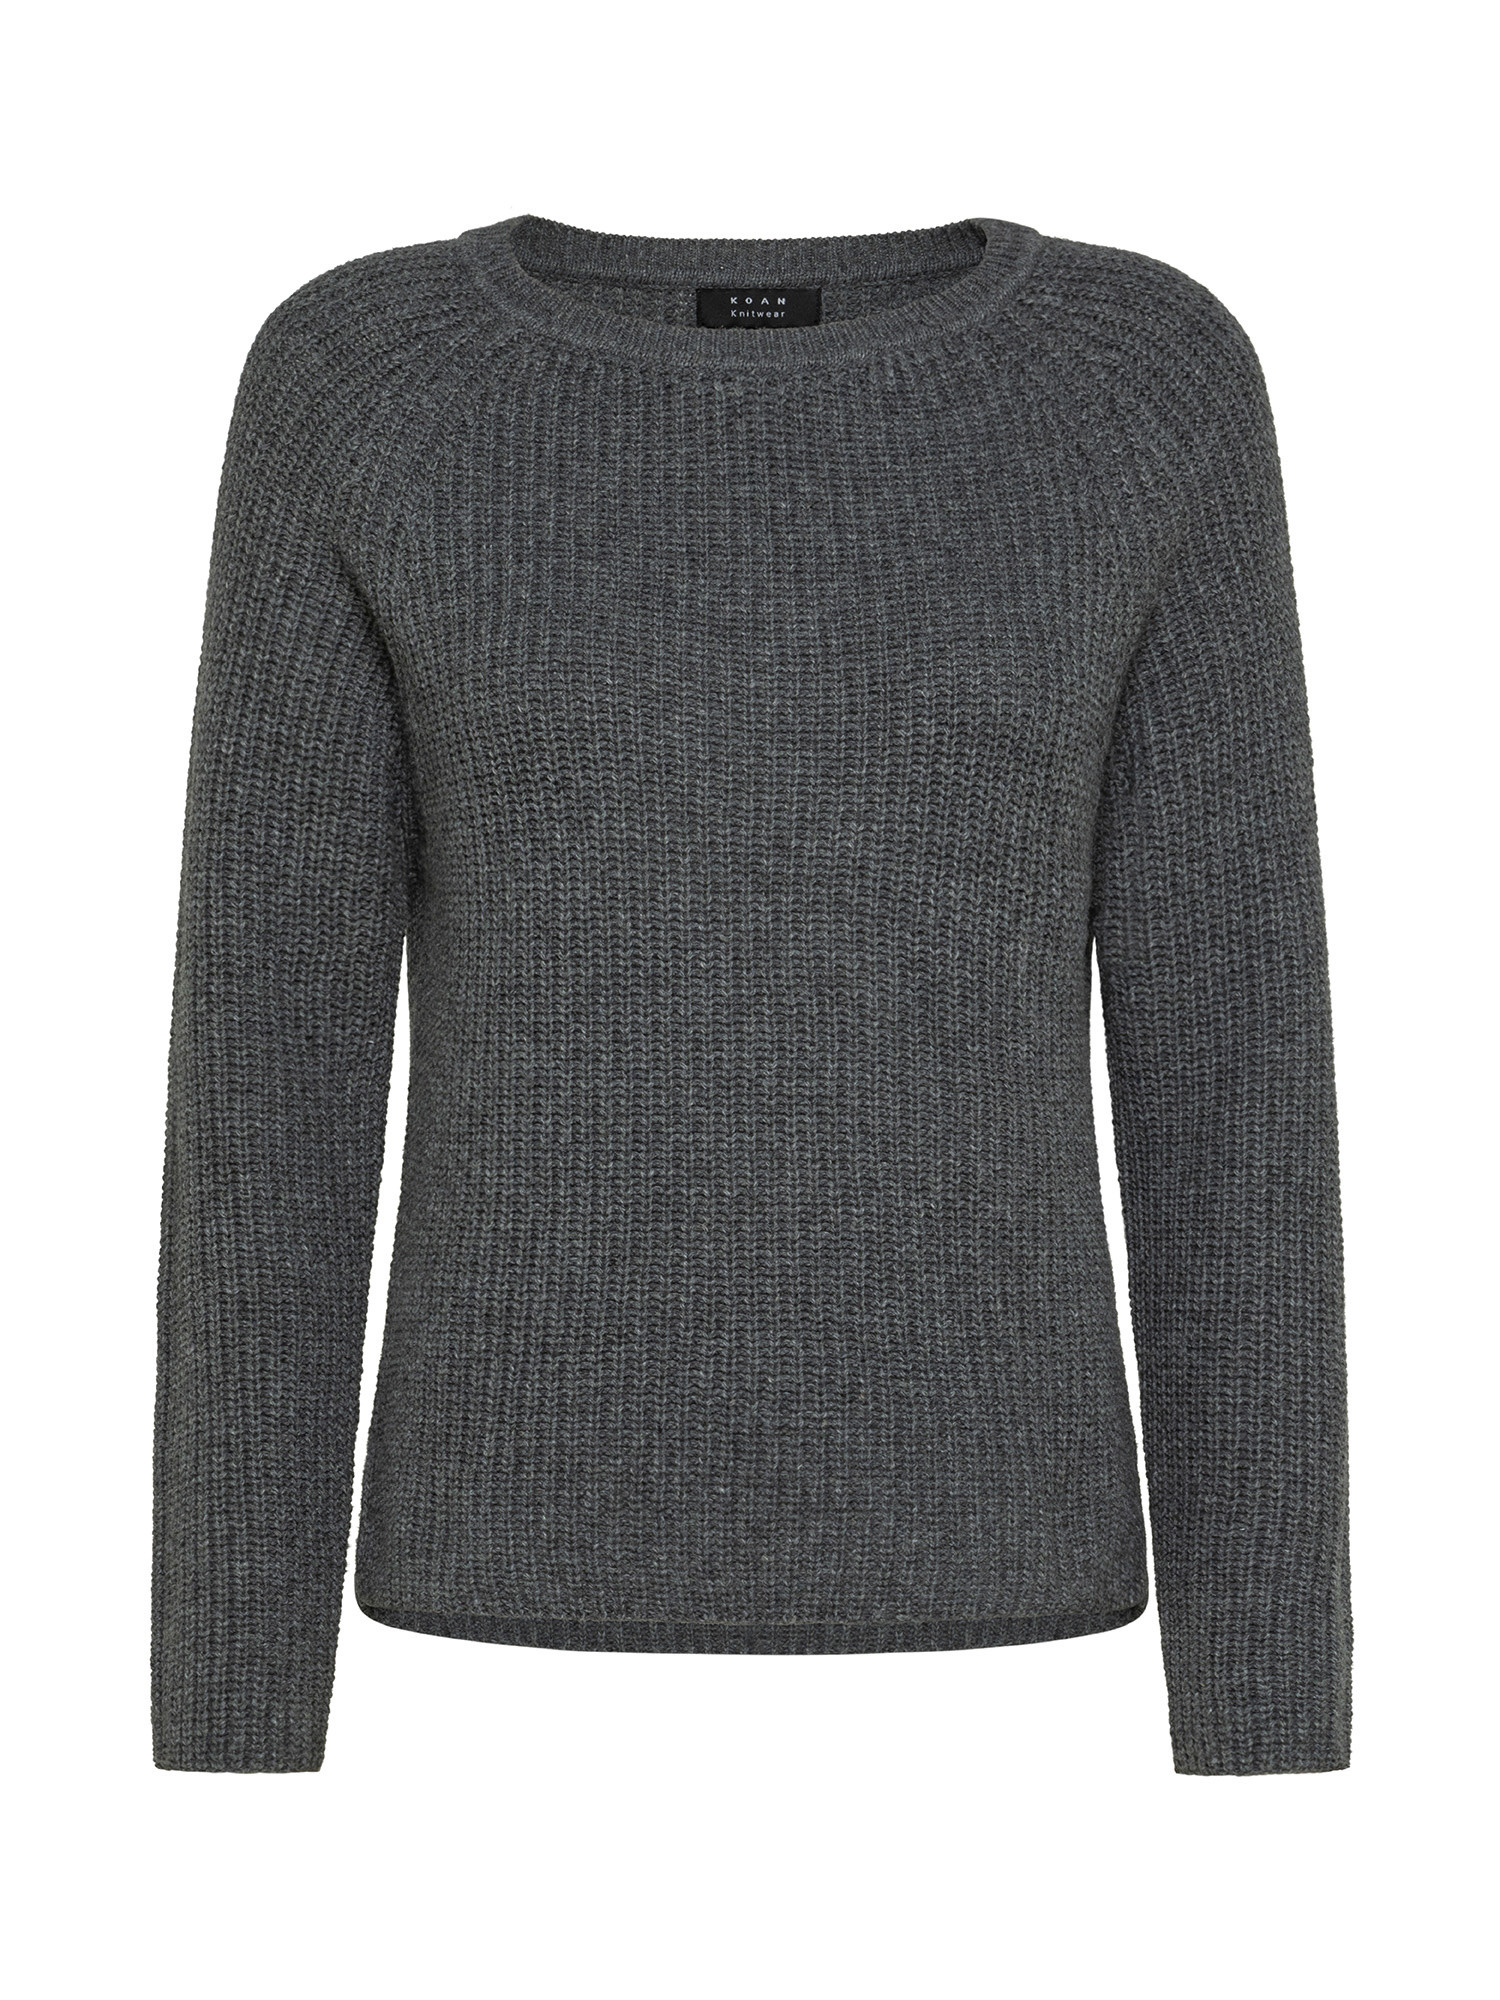 Koan Collection свитер в рубчик с вырезом лодочкой., серый